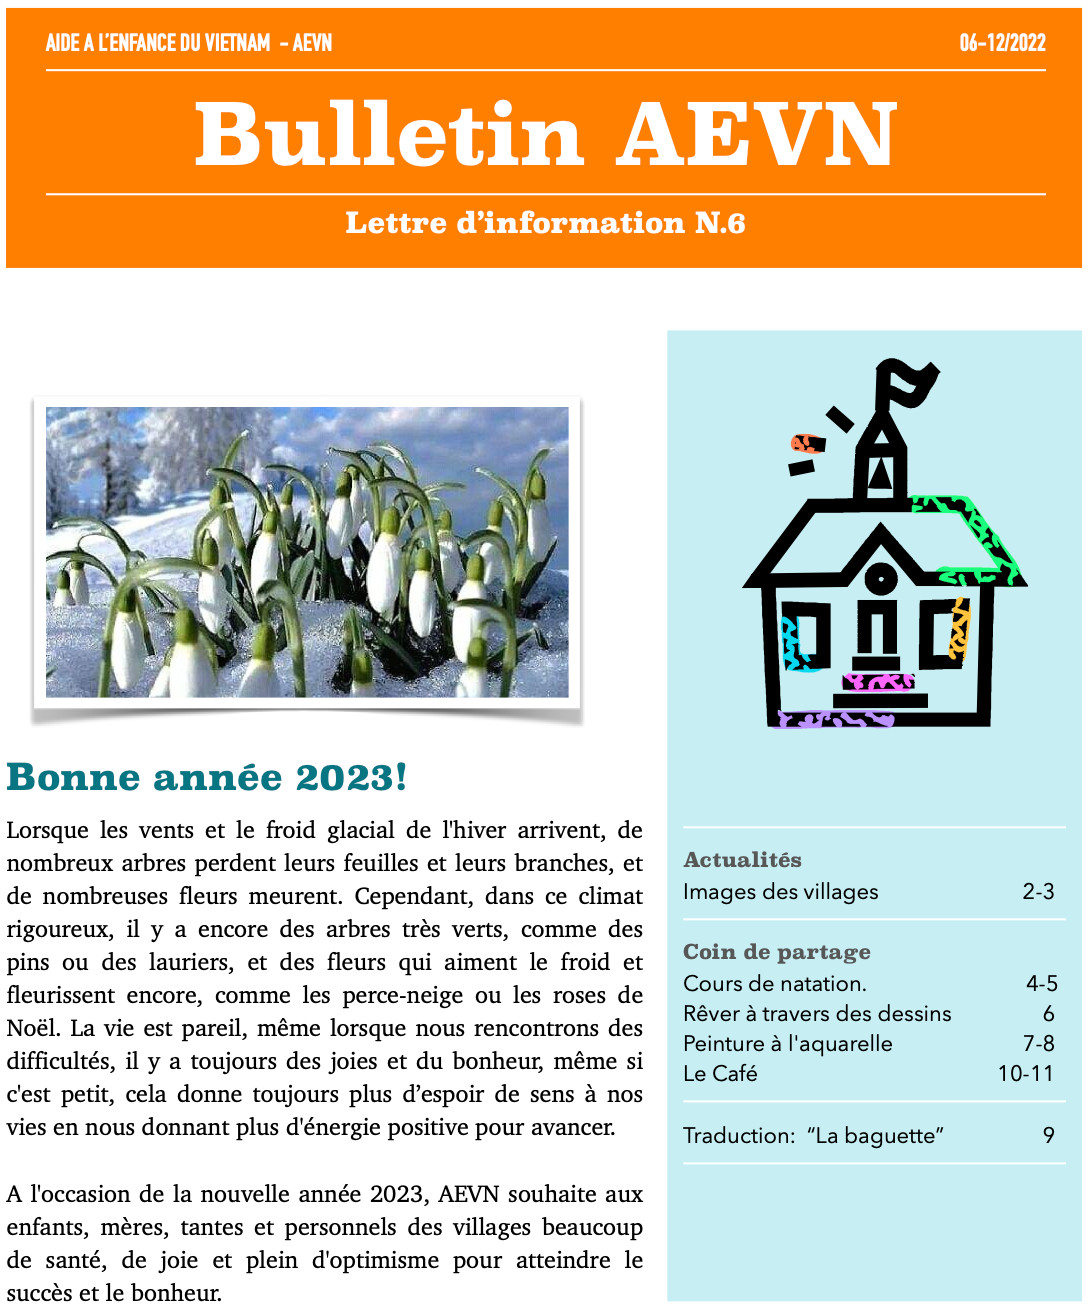 Bulletin AEVN numéro 6 (décembre 2022)